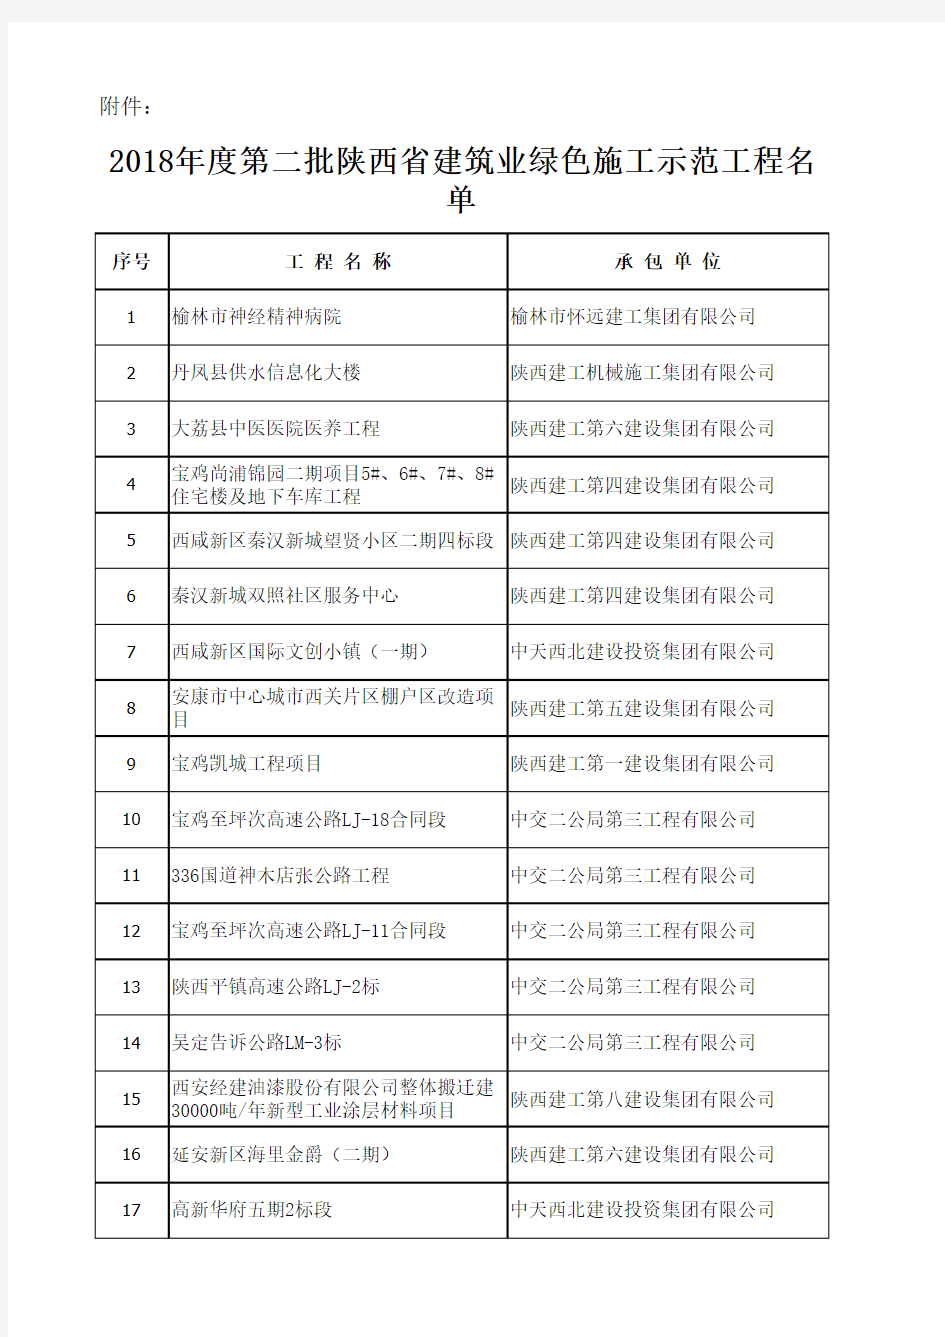 2018年度第二批陕西省建筑业绿色施工示范工程名单